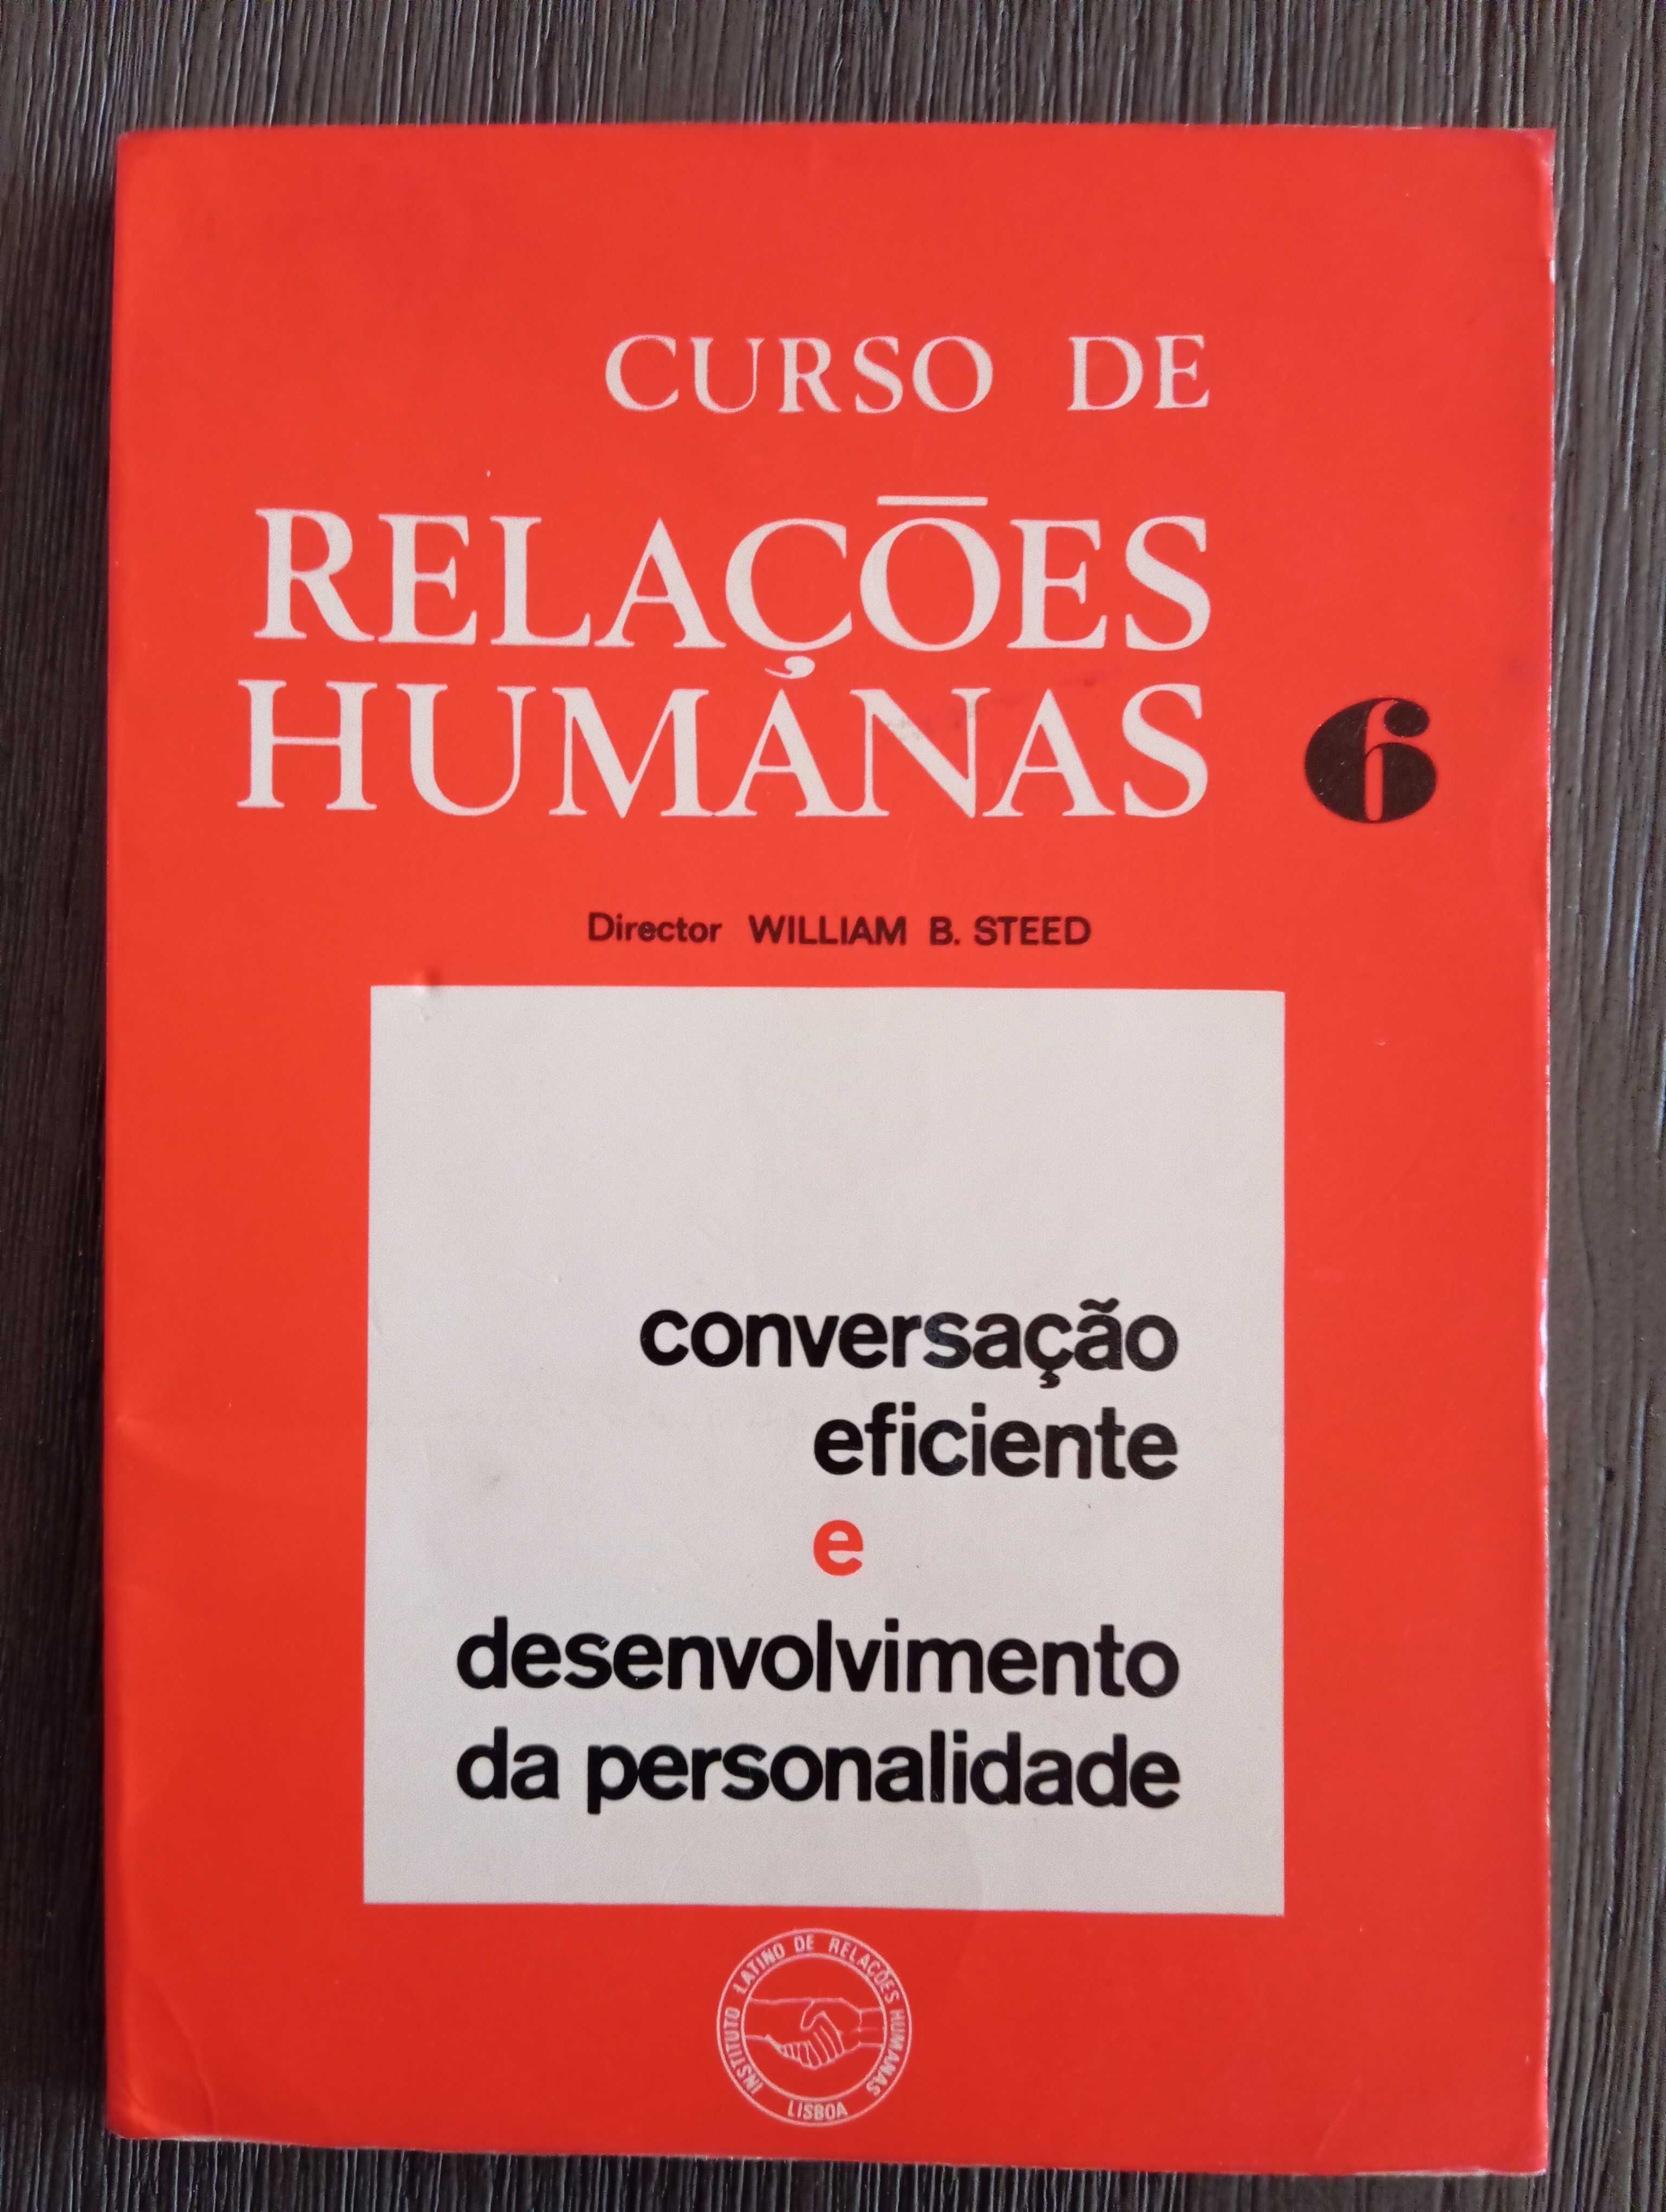 Curso de relações humanas - Módulo 6